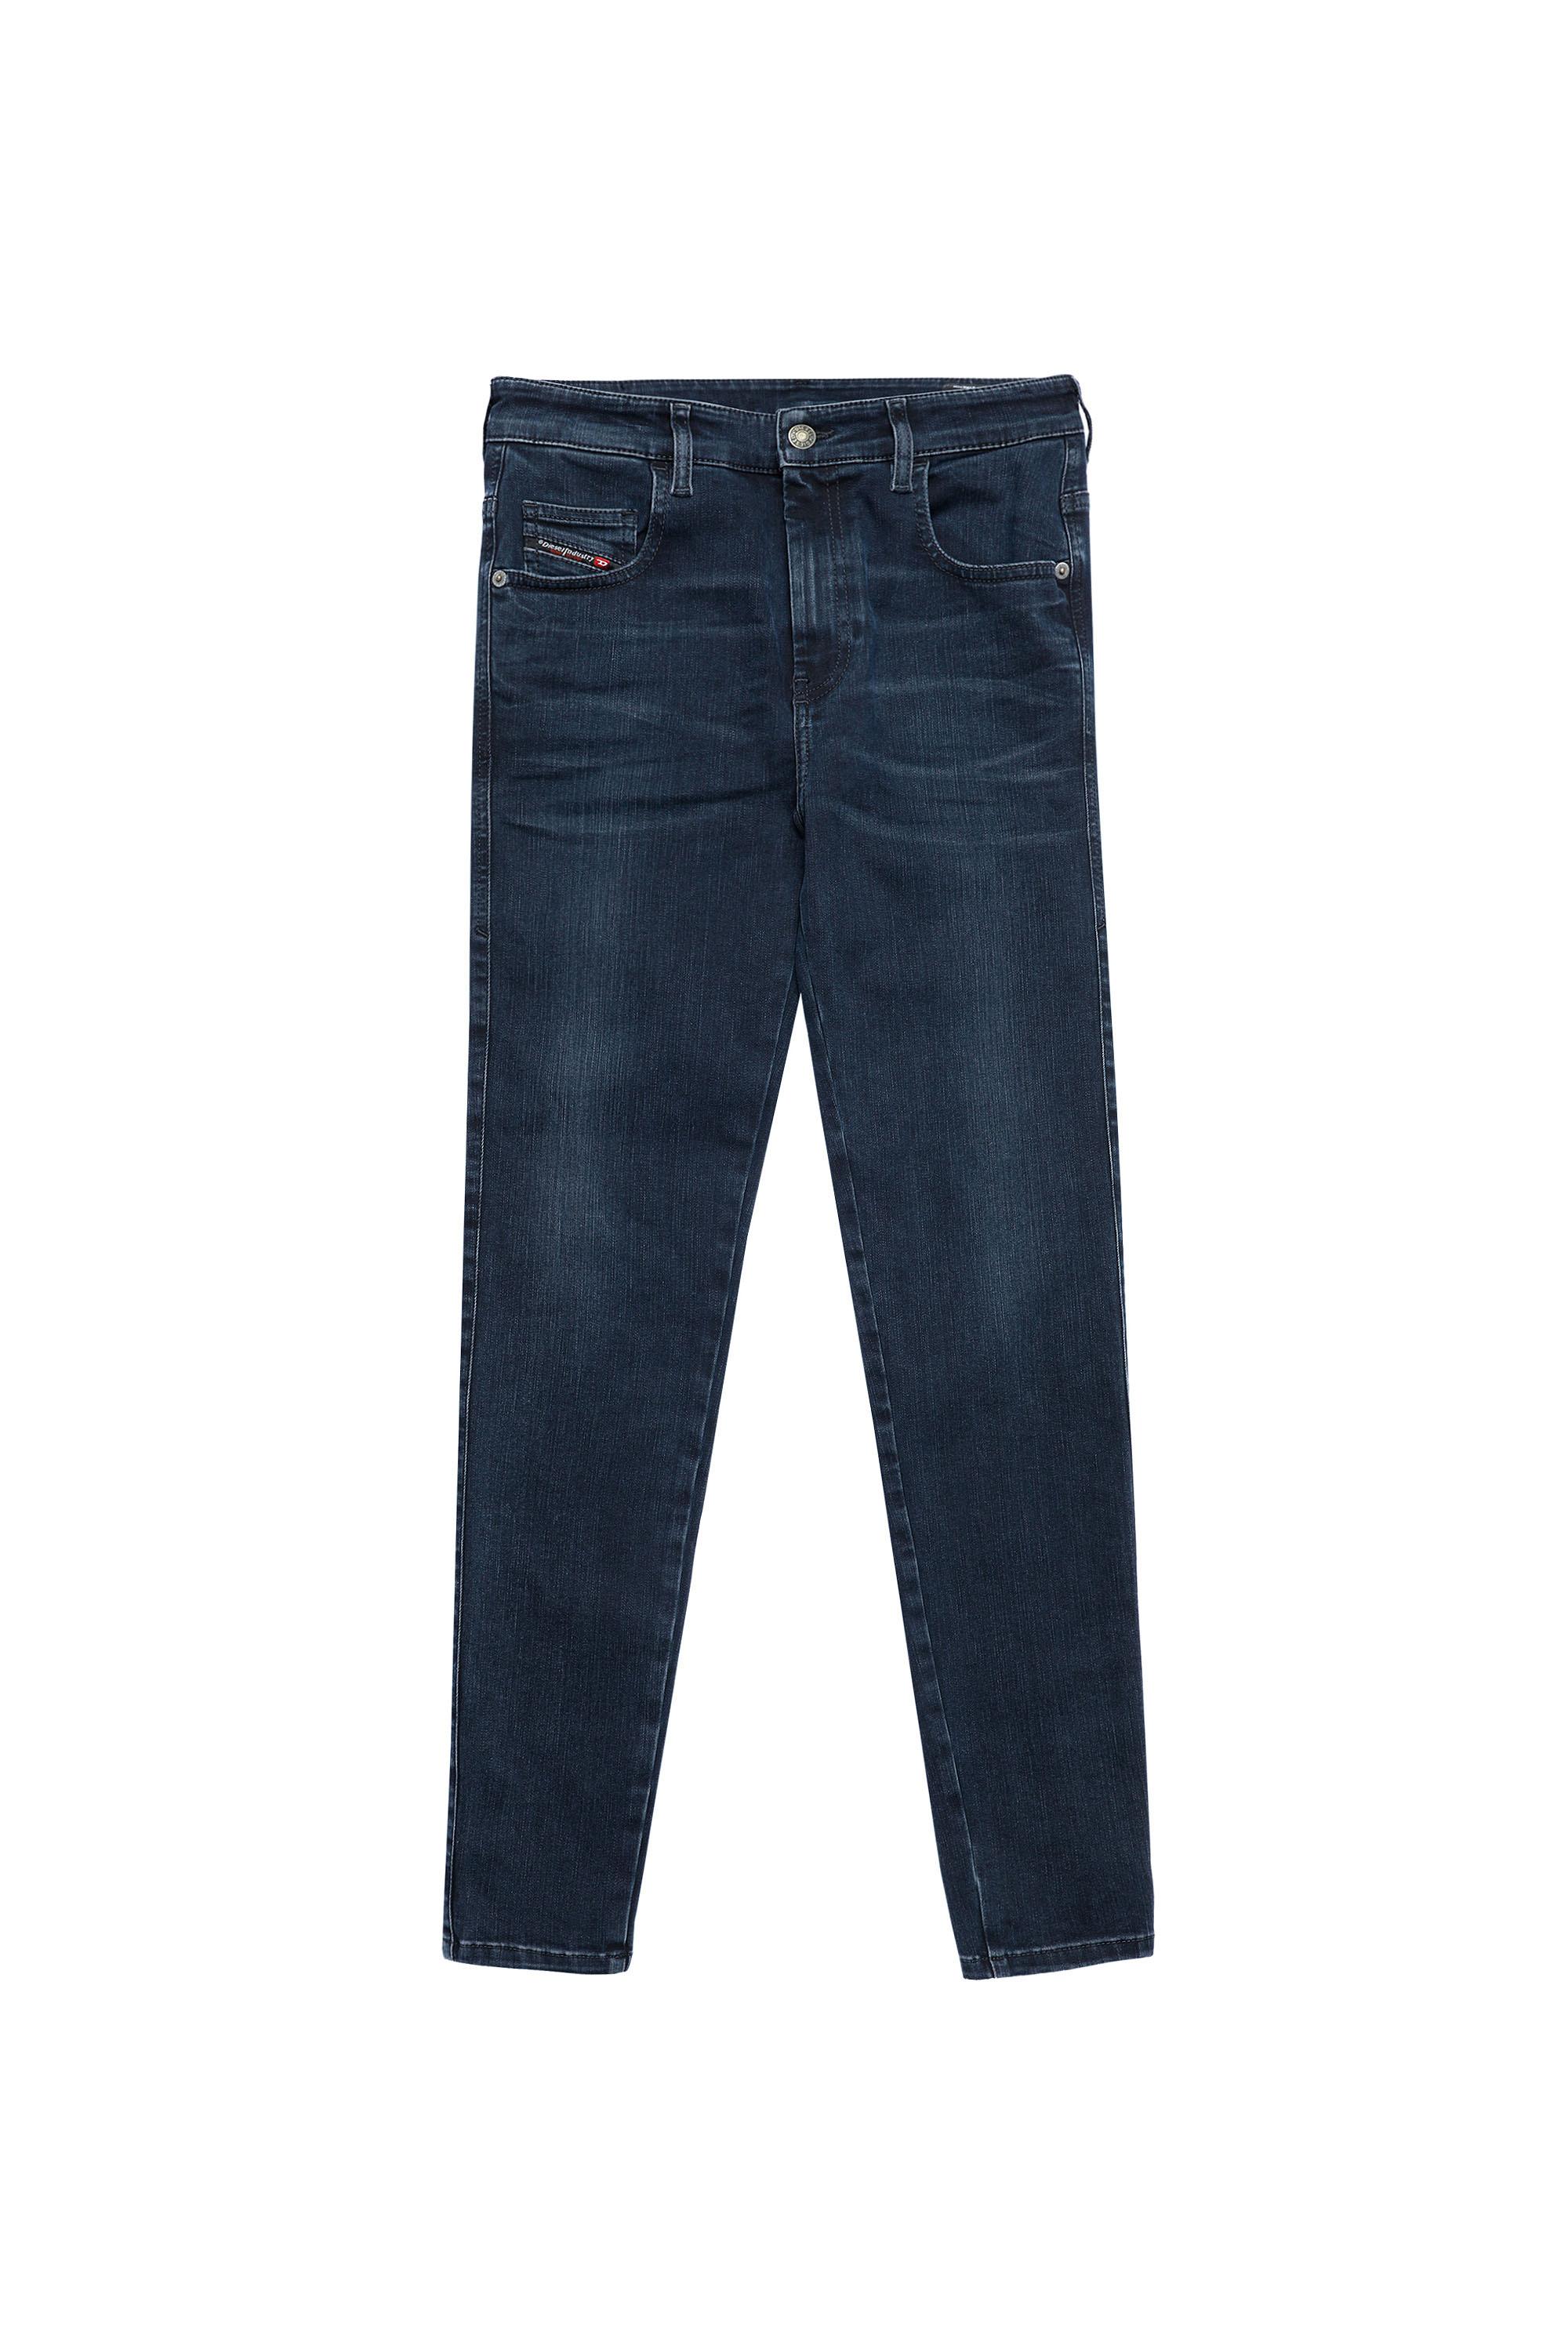 Diesel - Slandy High Skinny Jeans 009QF, Dark Blue - Image 2